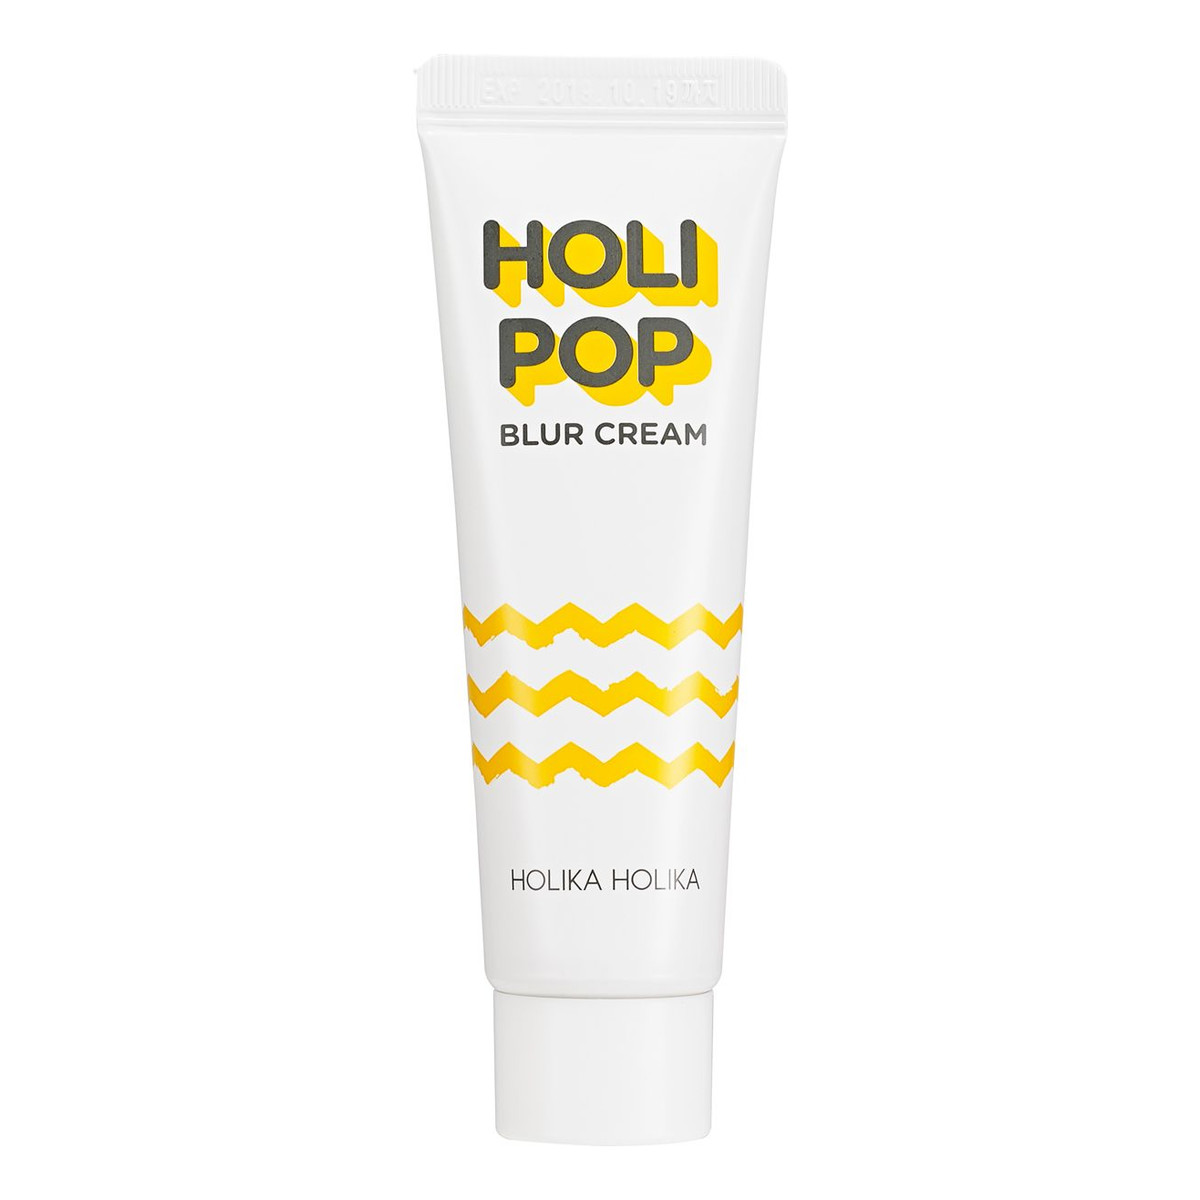 Holika Holika Holi Pop Blur Cream tonizujący krem rozświetlający 30ml